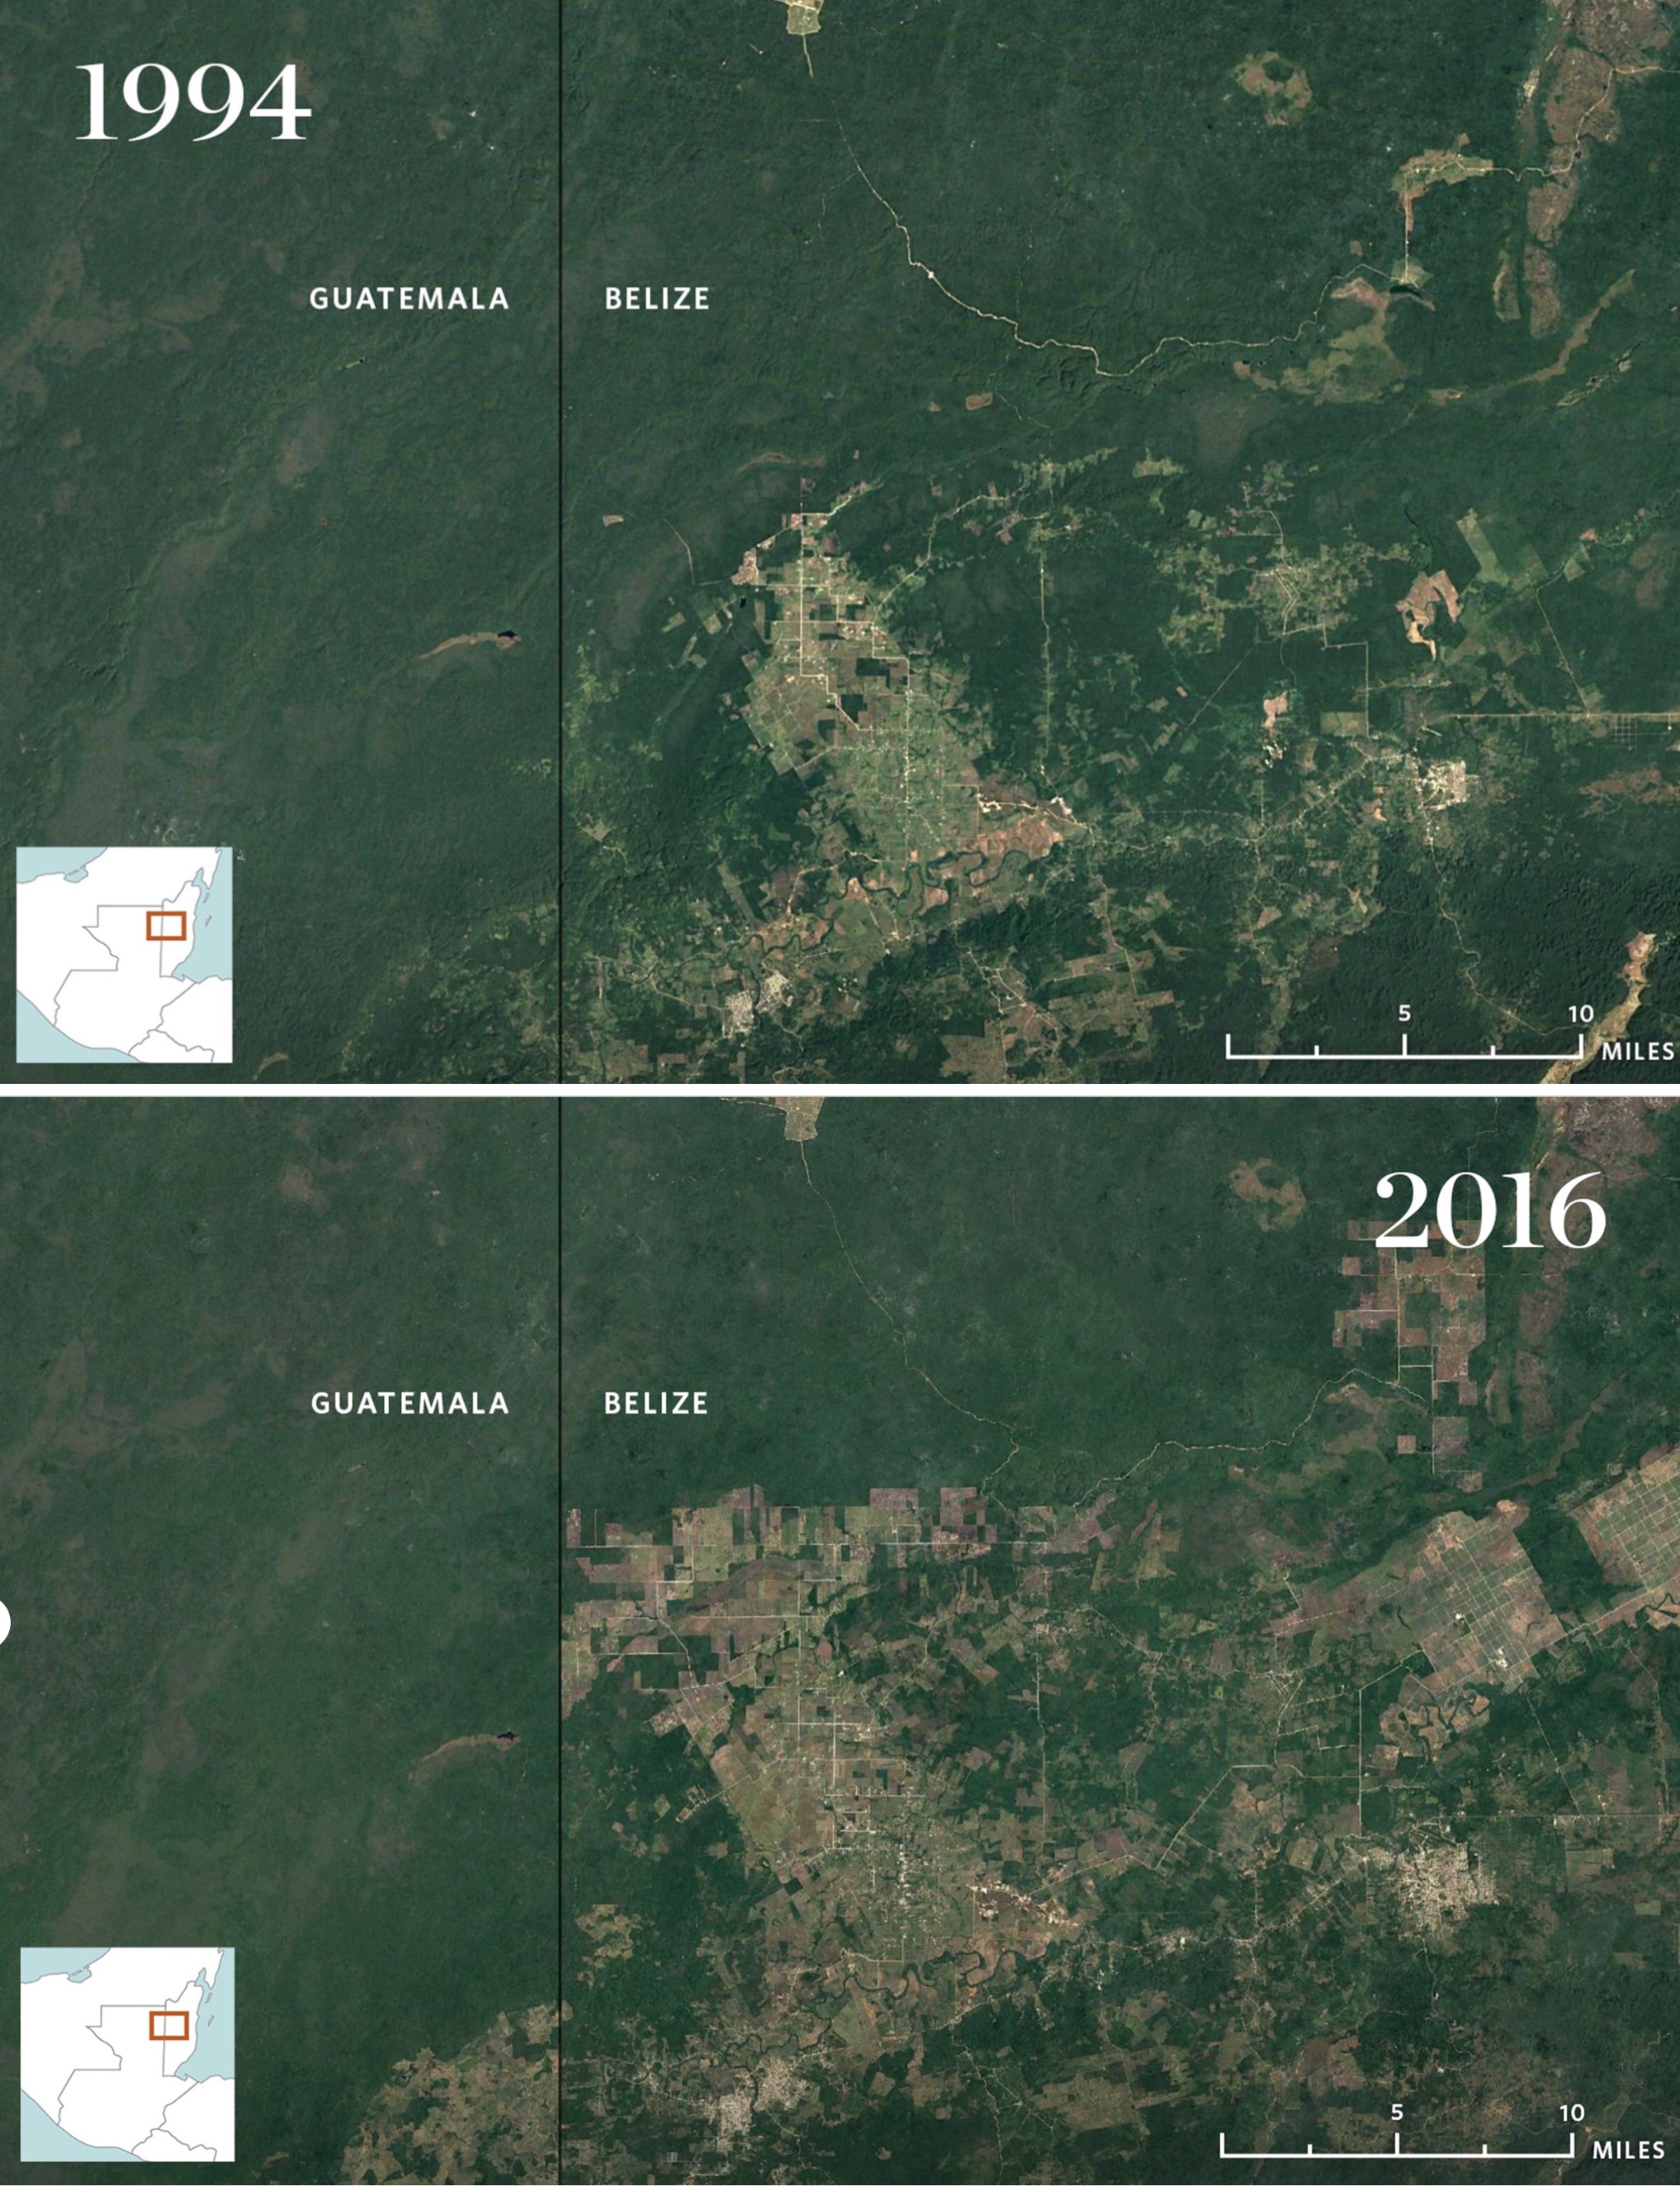 Alrededor de la Selva Maya, los datos de deforestación han superado la media nacional en cuatro veces. Usa el ratón para ver un ejemplo de cómo el desarrollo ha invadido el oeste de Belice desde 1994 (izquierda) hasta 2016 (derecha) © Google Earth, Image Landsat/Copernicus